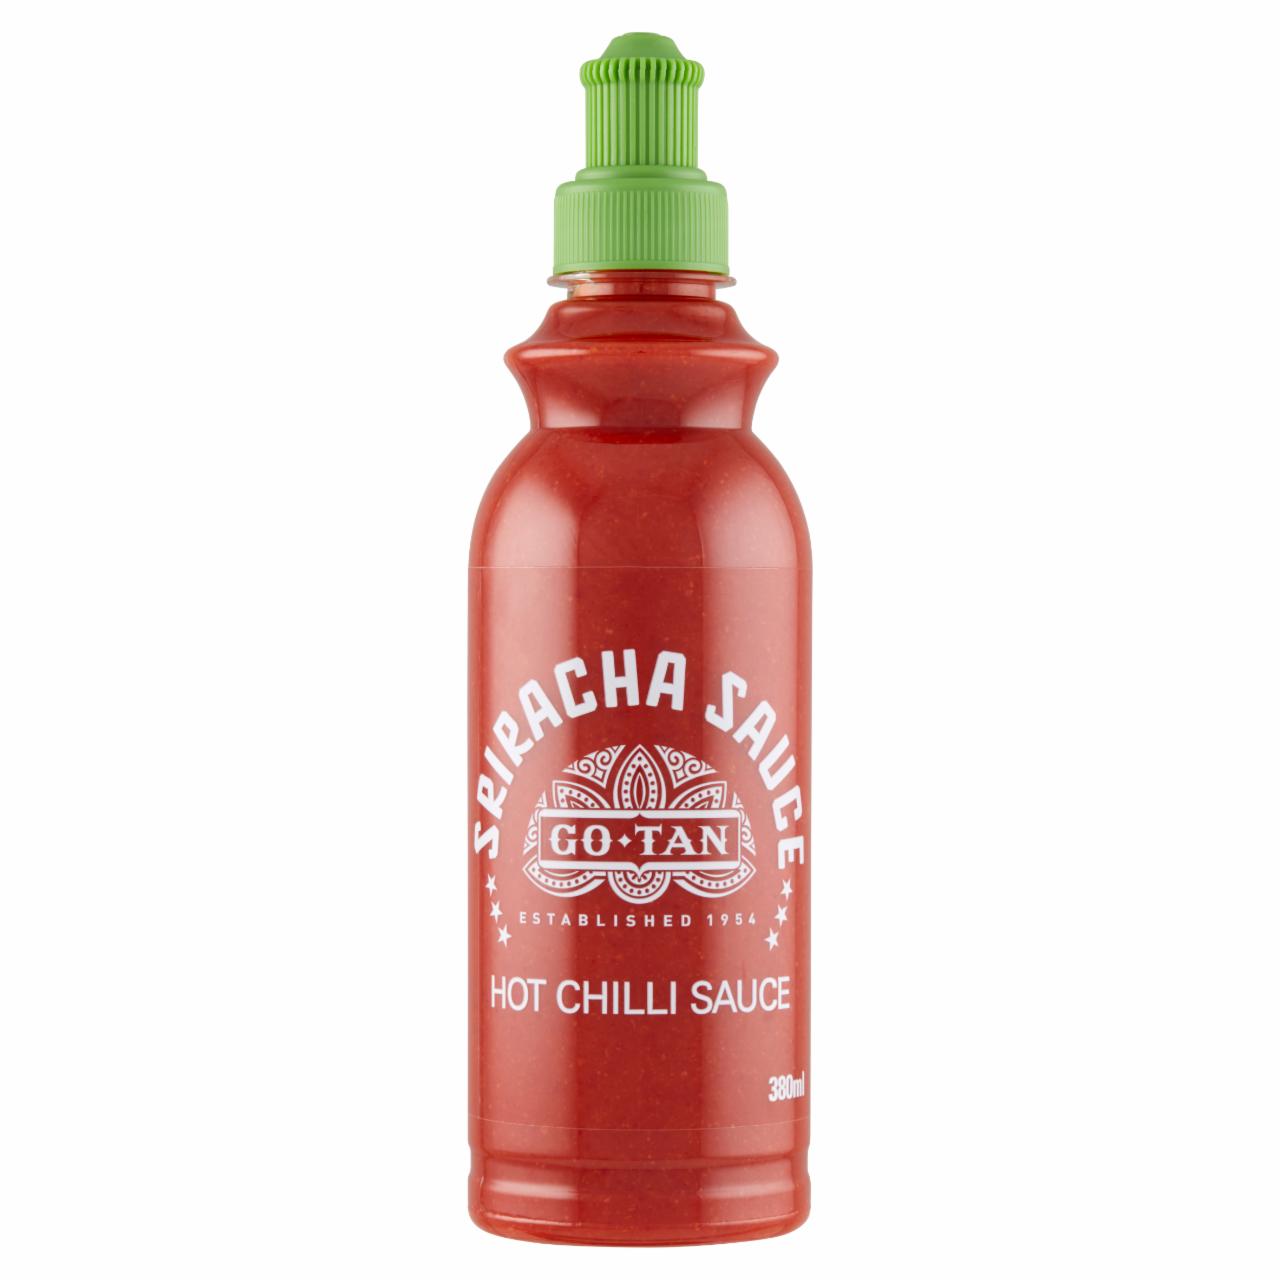 Képek - Go-Tan Sriracha Hot Chilli szósz 380 ml